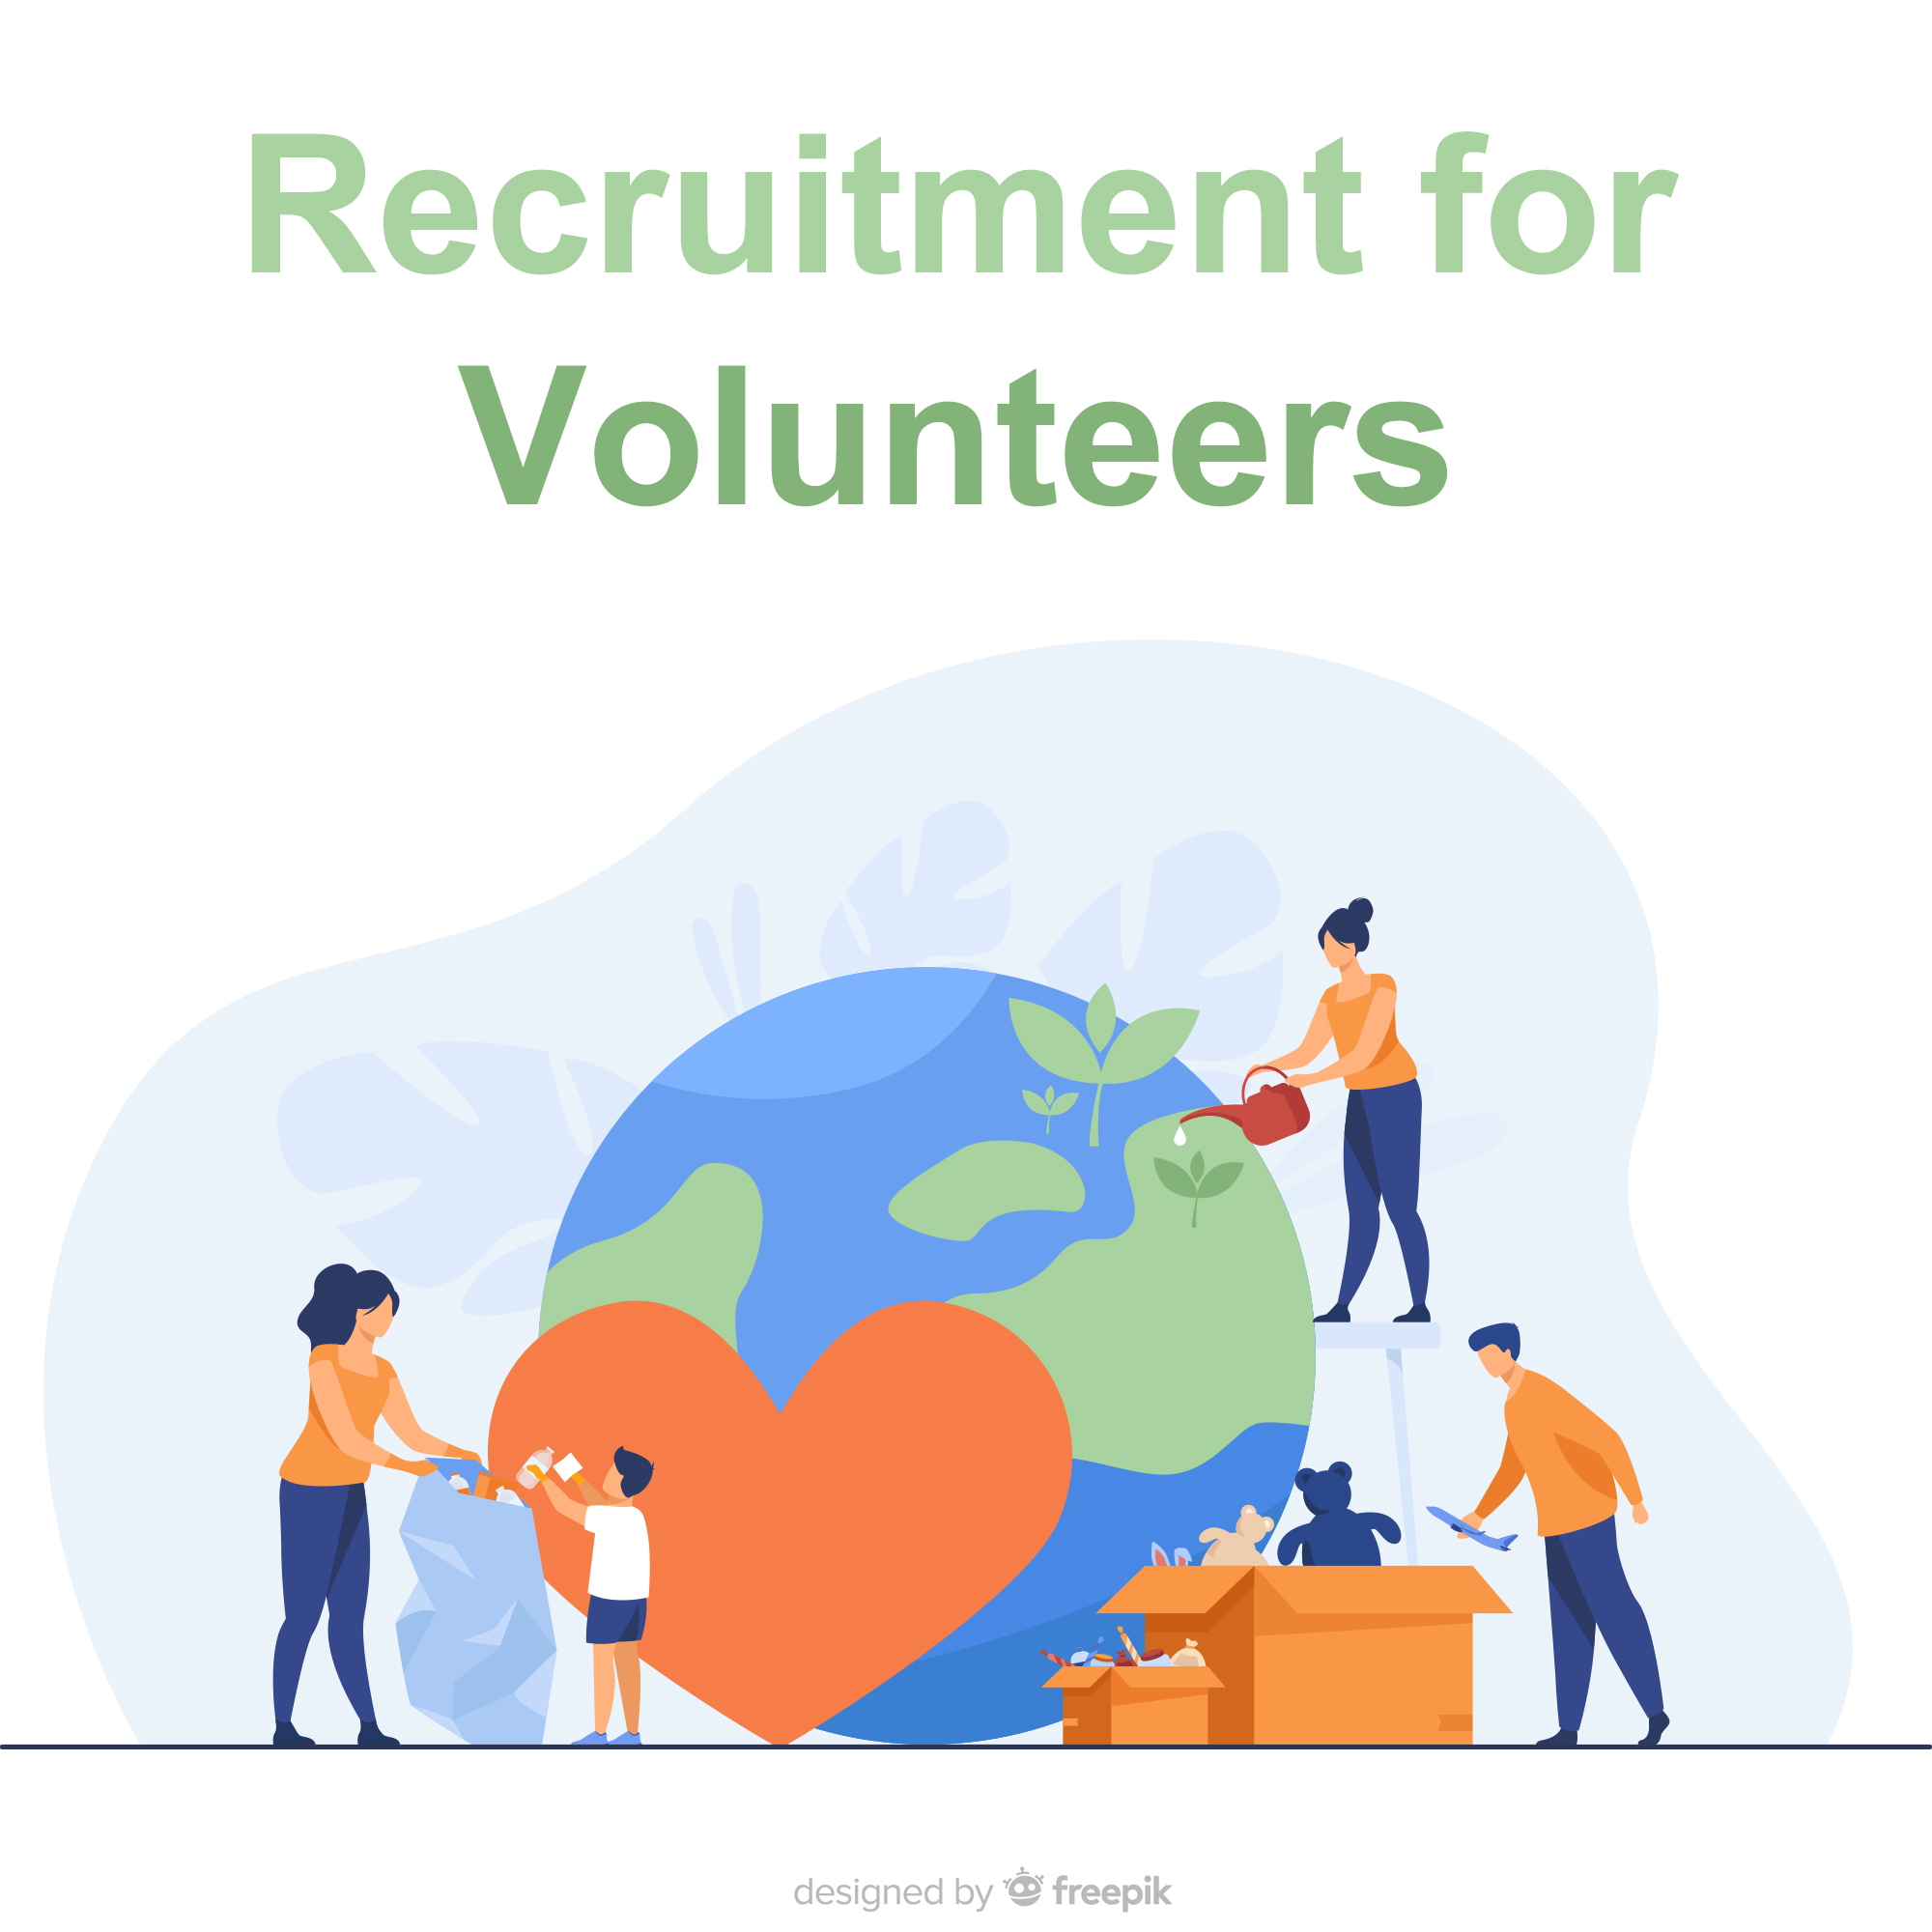 Recruitment for Volunteers